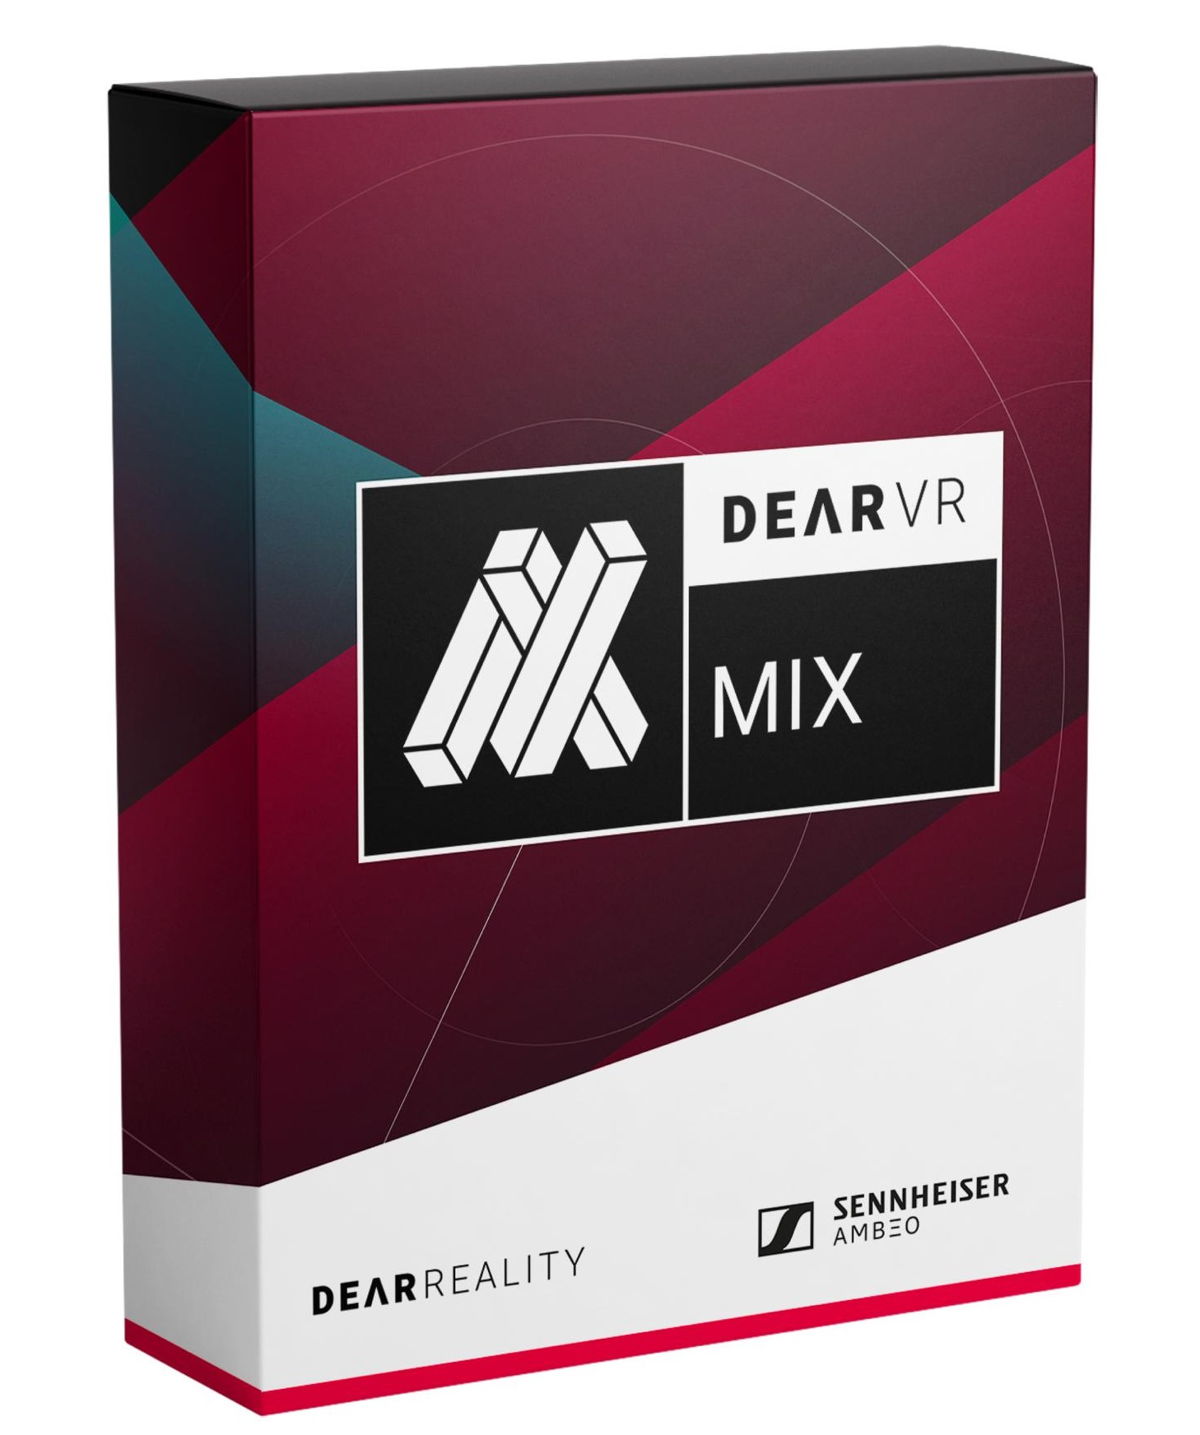 Bis zum 30. November 2021 gibt es einen speziellen Einführungspreis für dearVR MIX